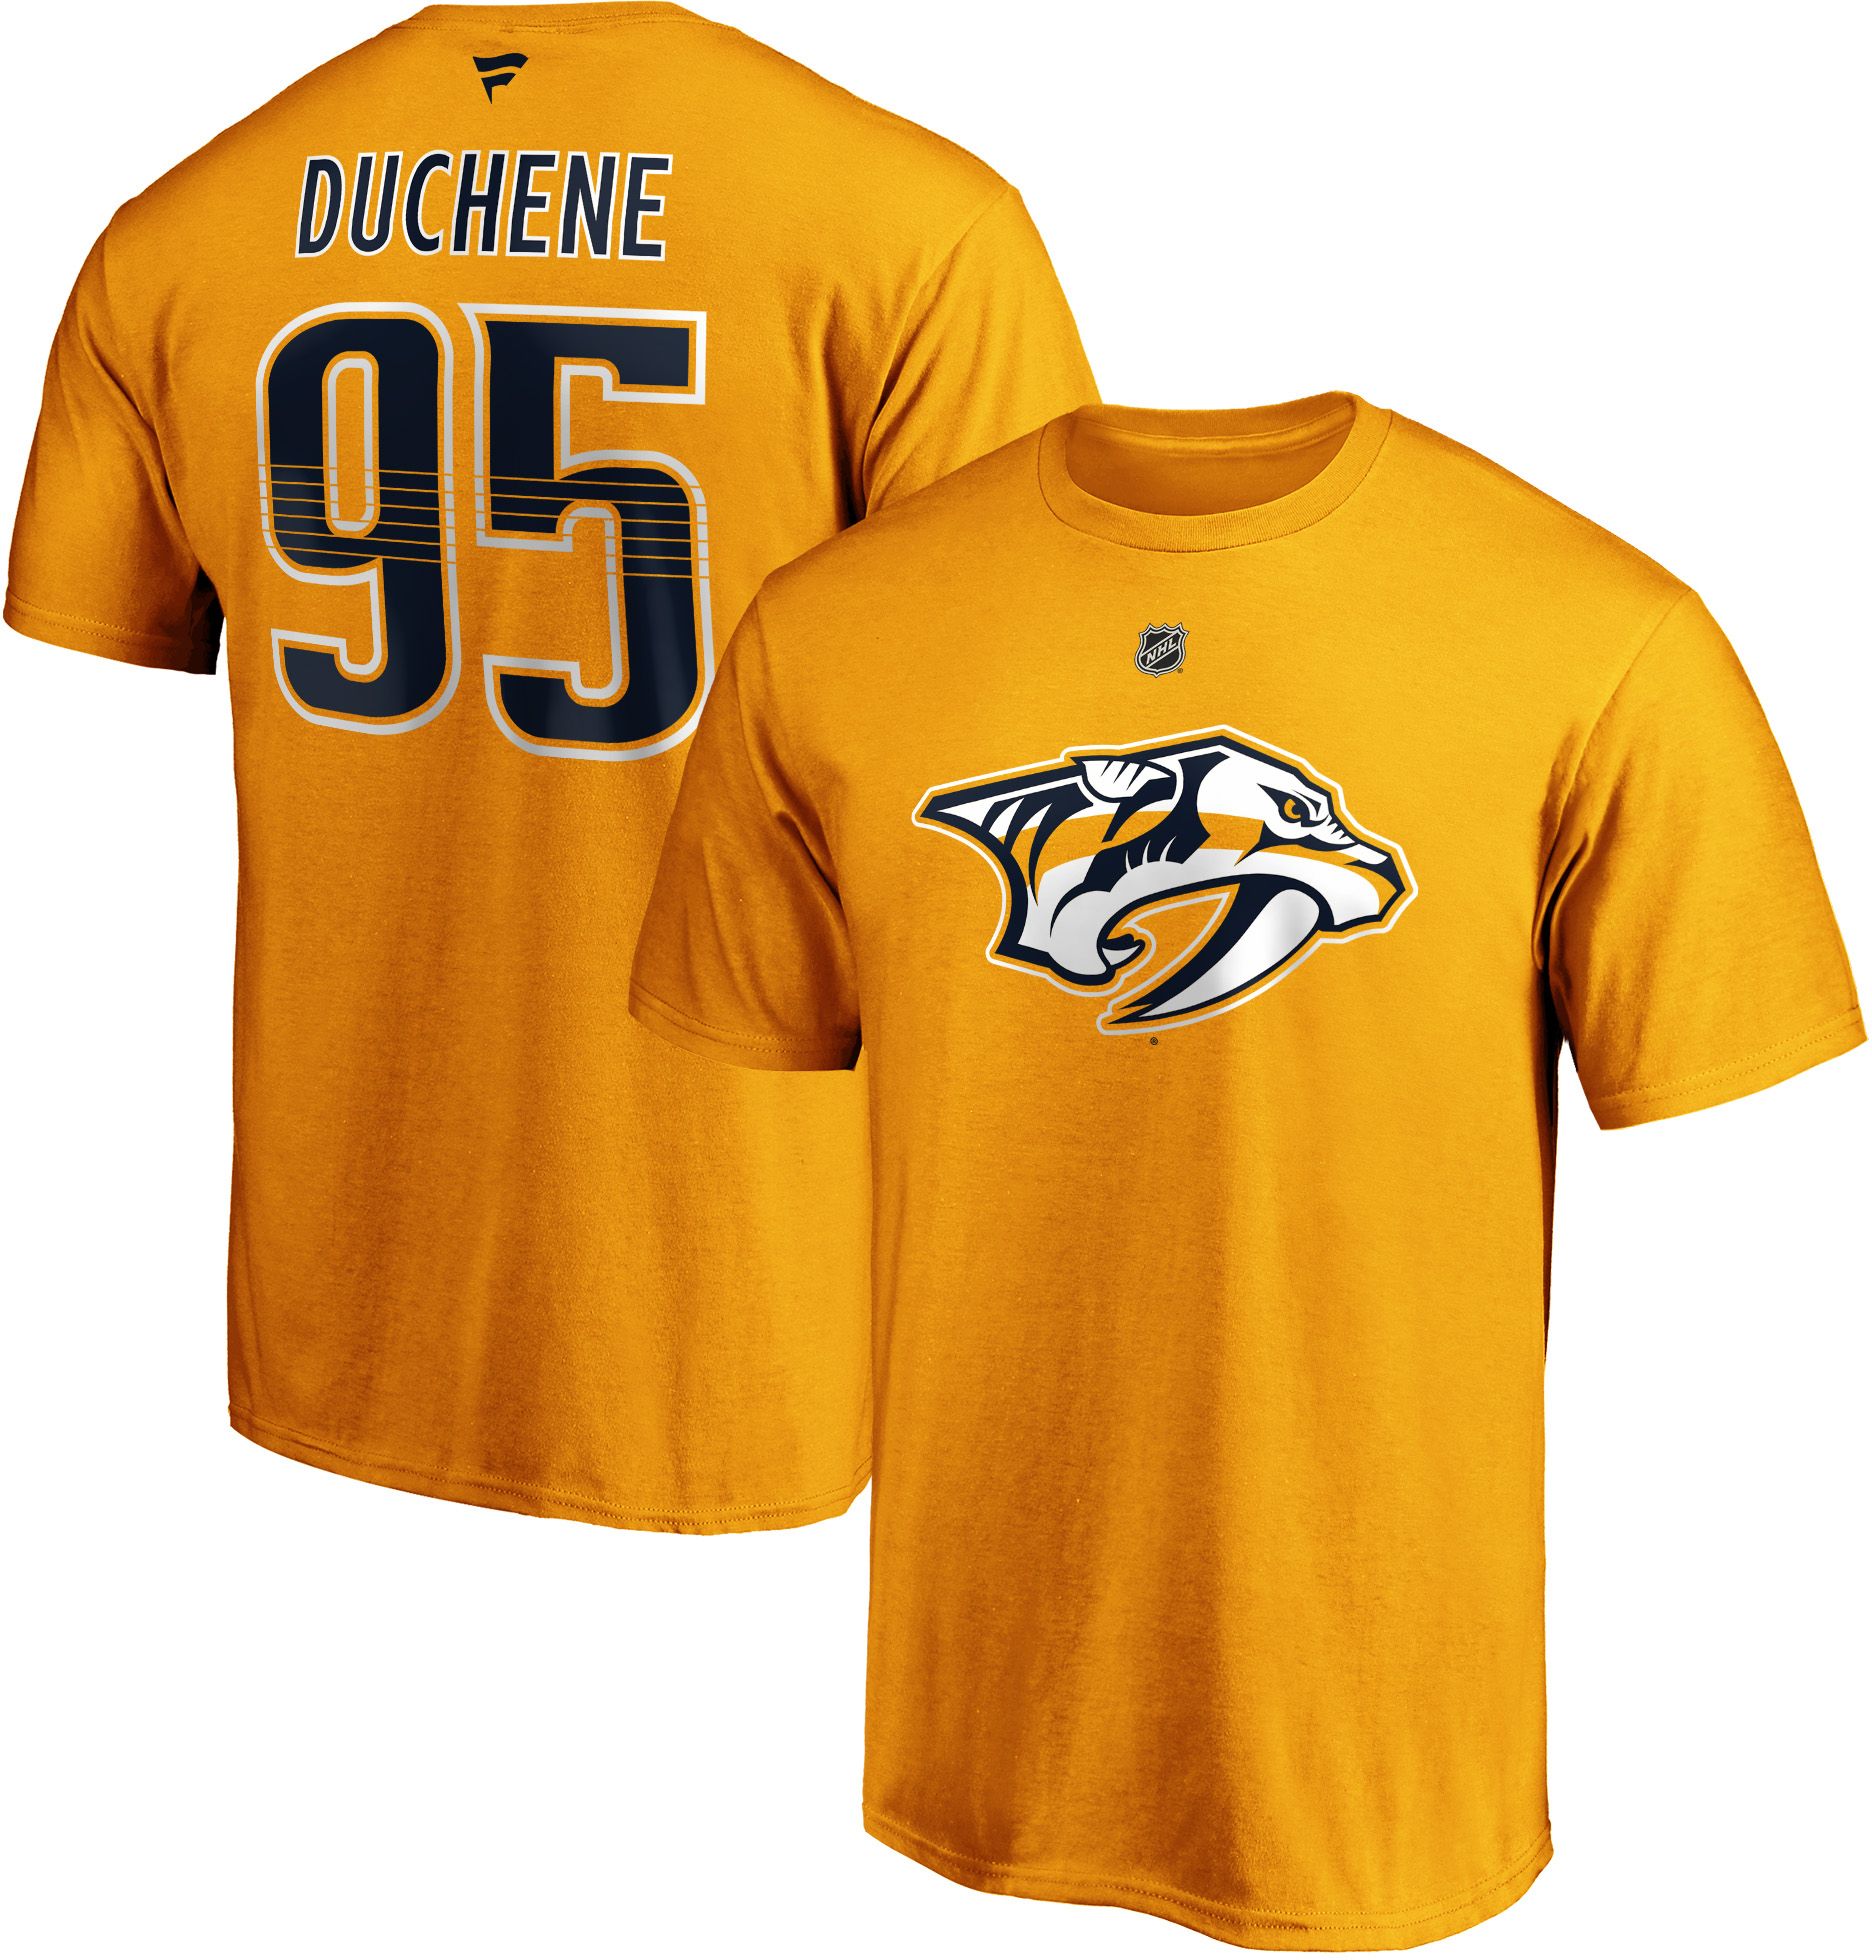 Matt Duchene #95 Gold Player T-Shirt 